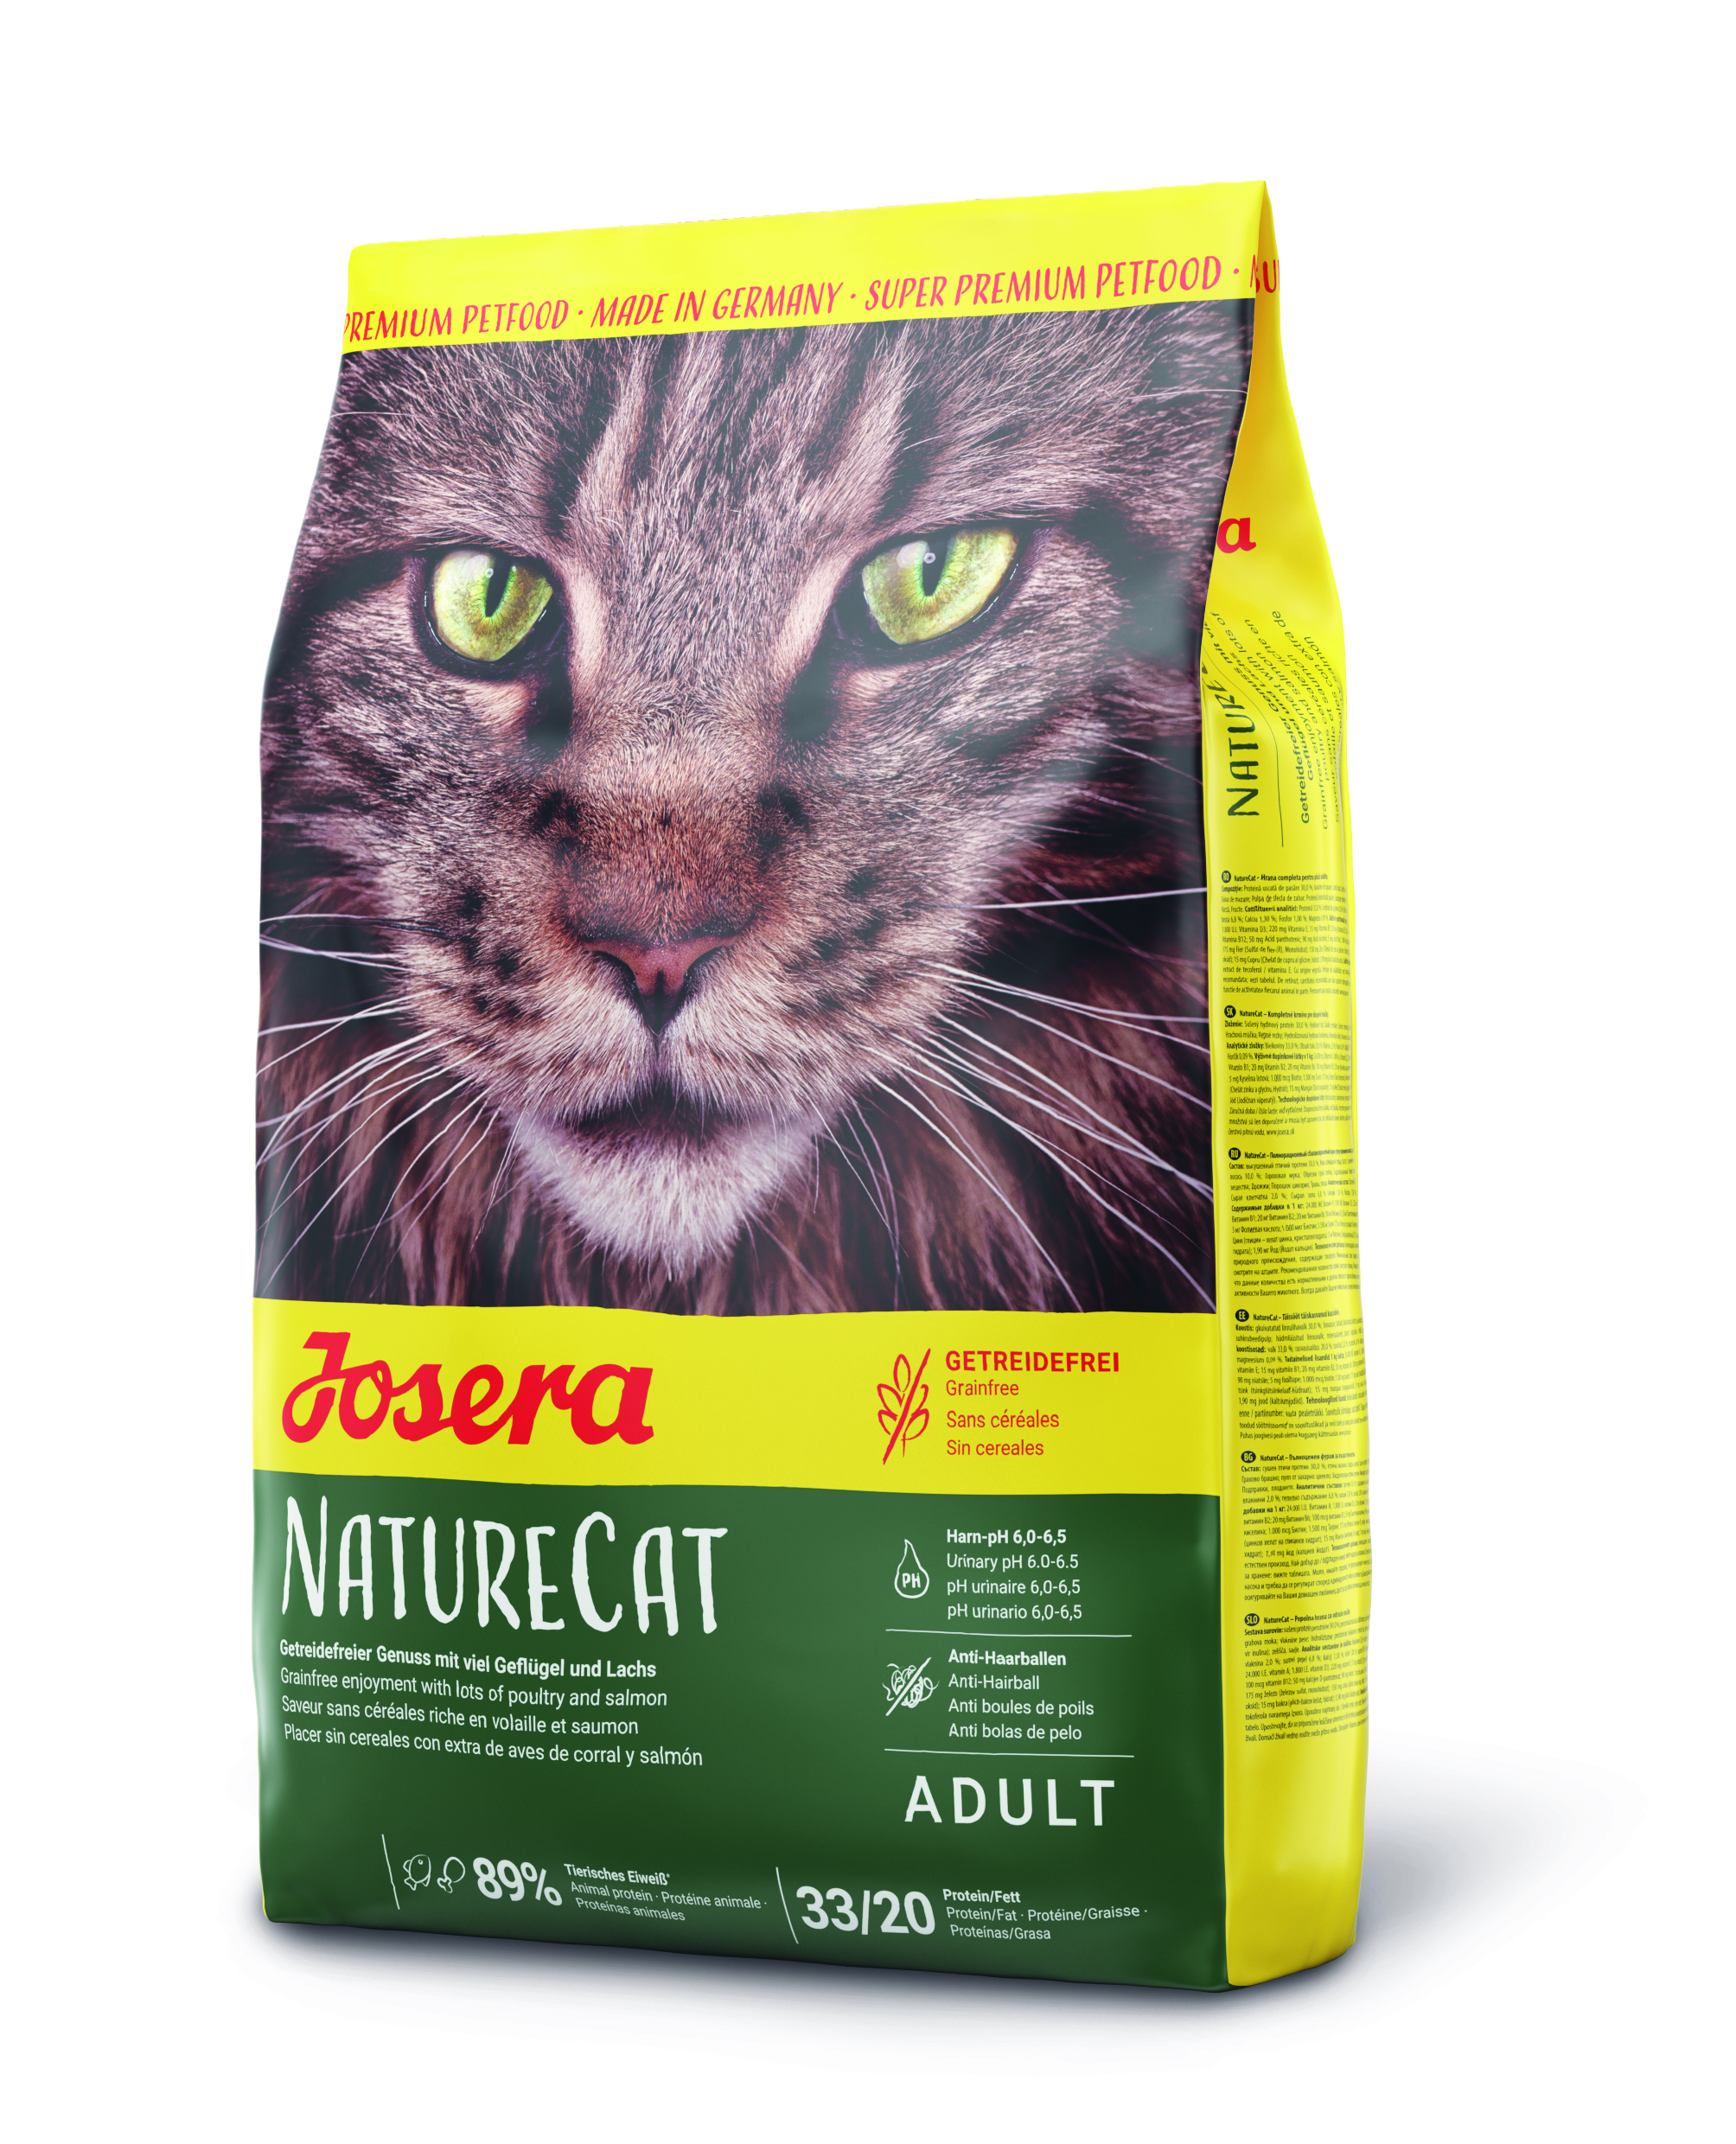 GRUNER Josera NatureCat 4,25kg neu Katzenfutter Super Premium